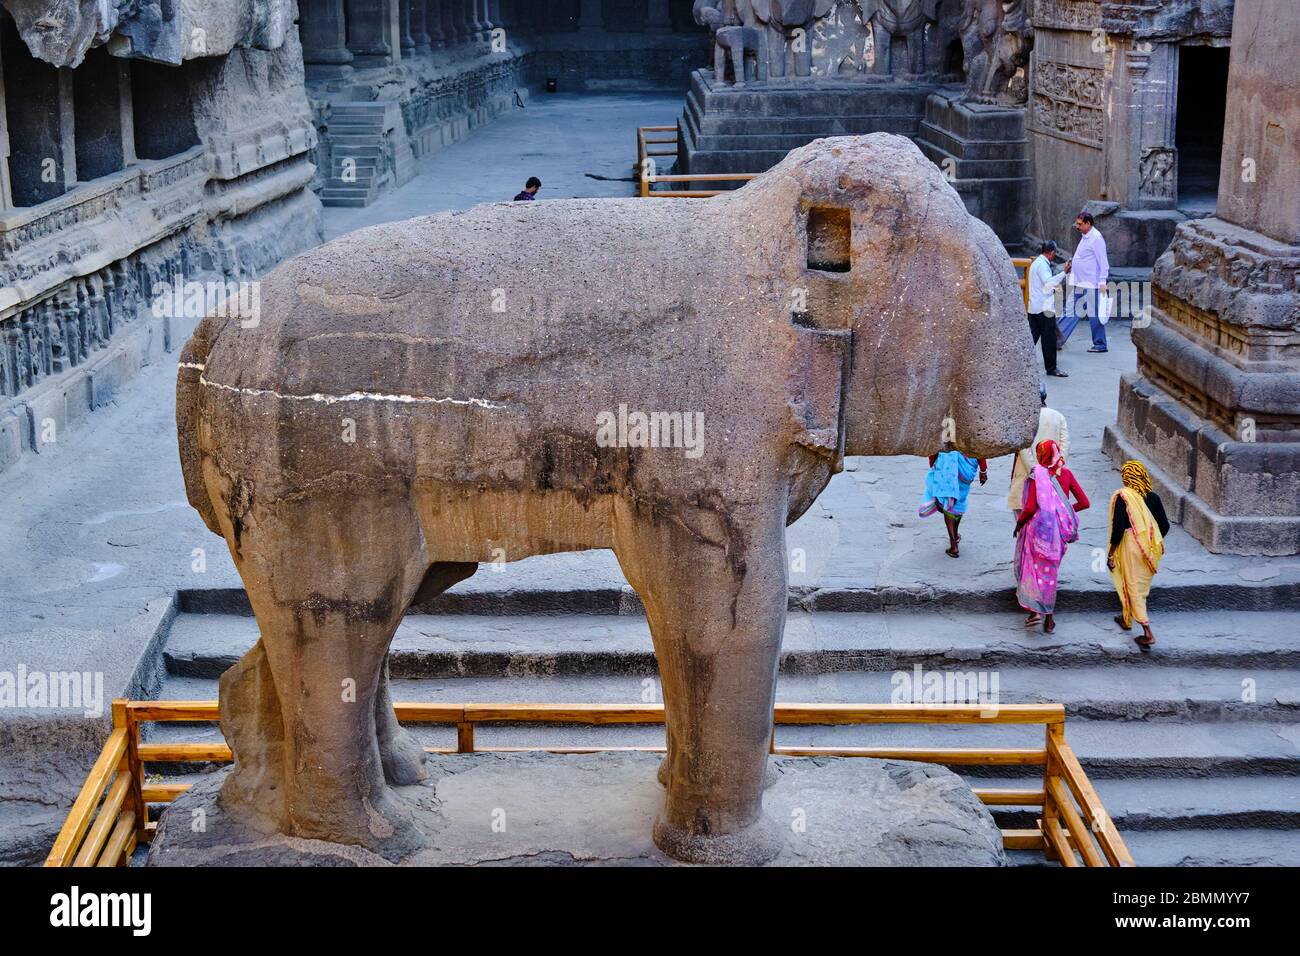 Inde, Maharashtra, temple de la grotte d'Ellora, patrimoine mondial de l'UNESCO, temple de Kailash, 8ème siècle, grotte N°16 Banque D'Images